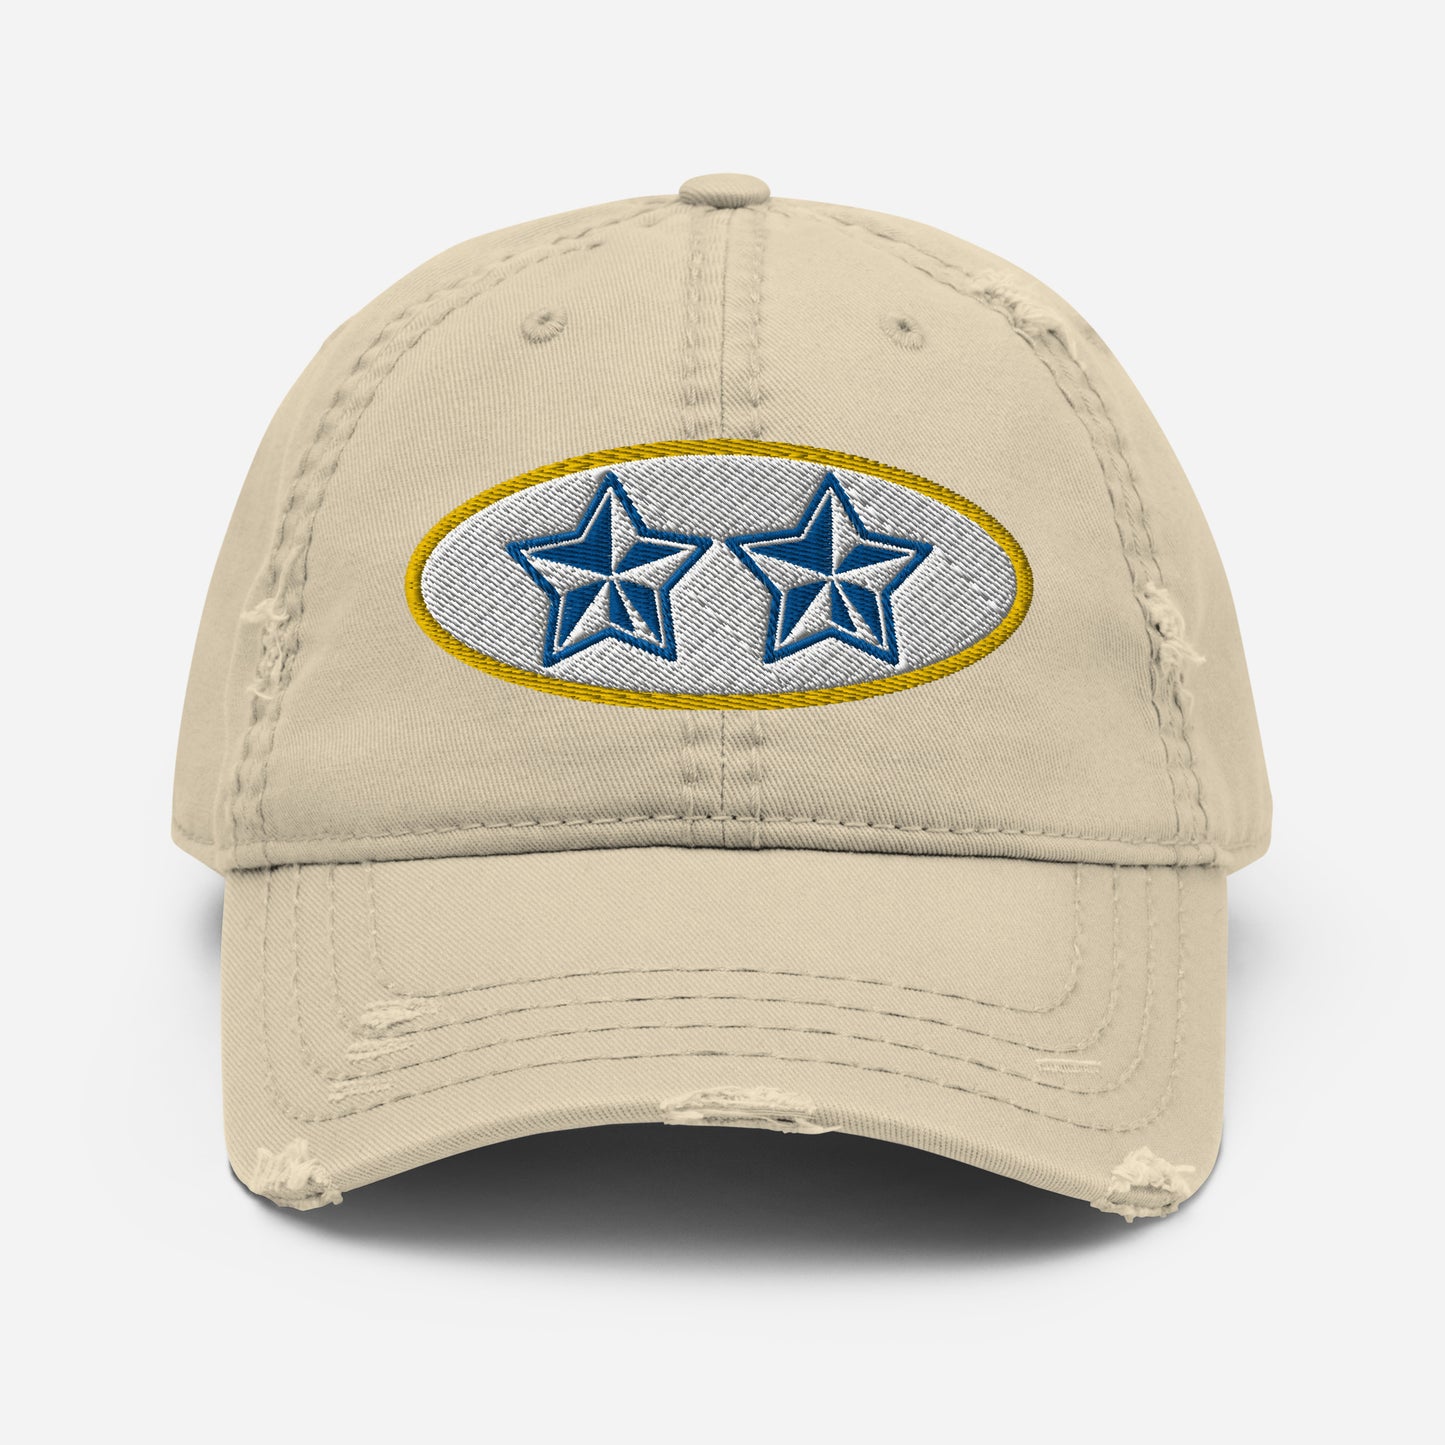 ESTRELLAS WORN CAP